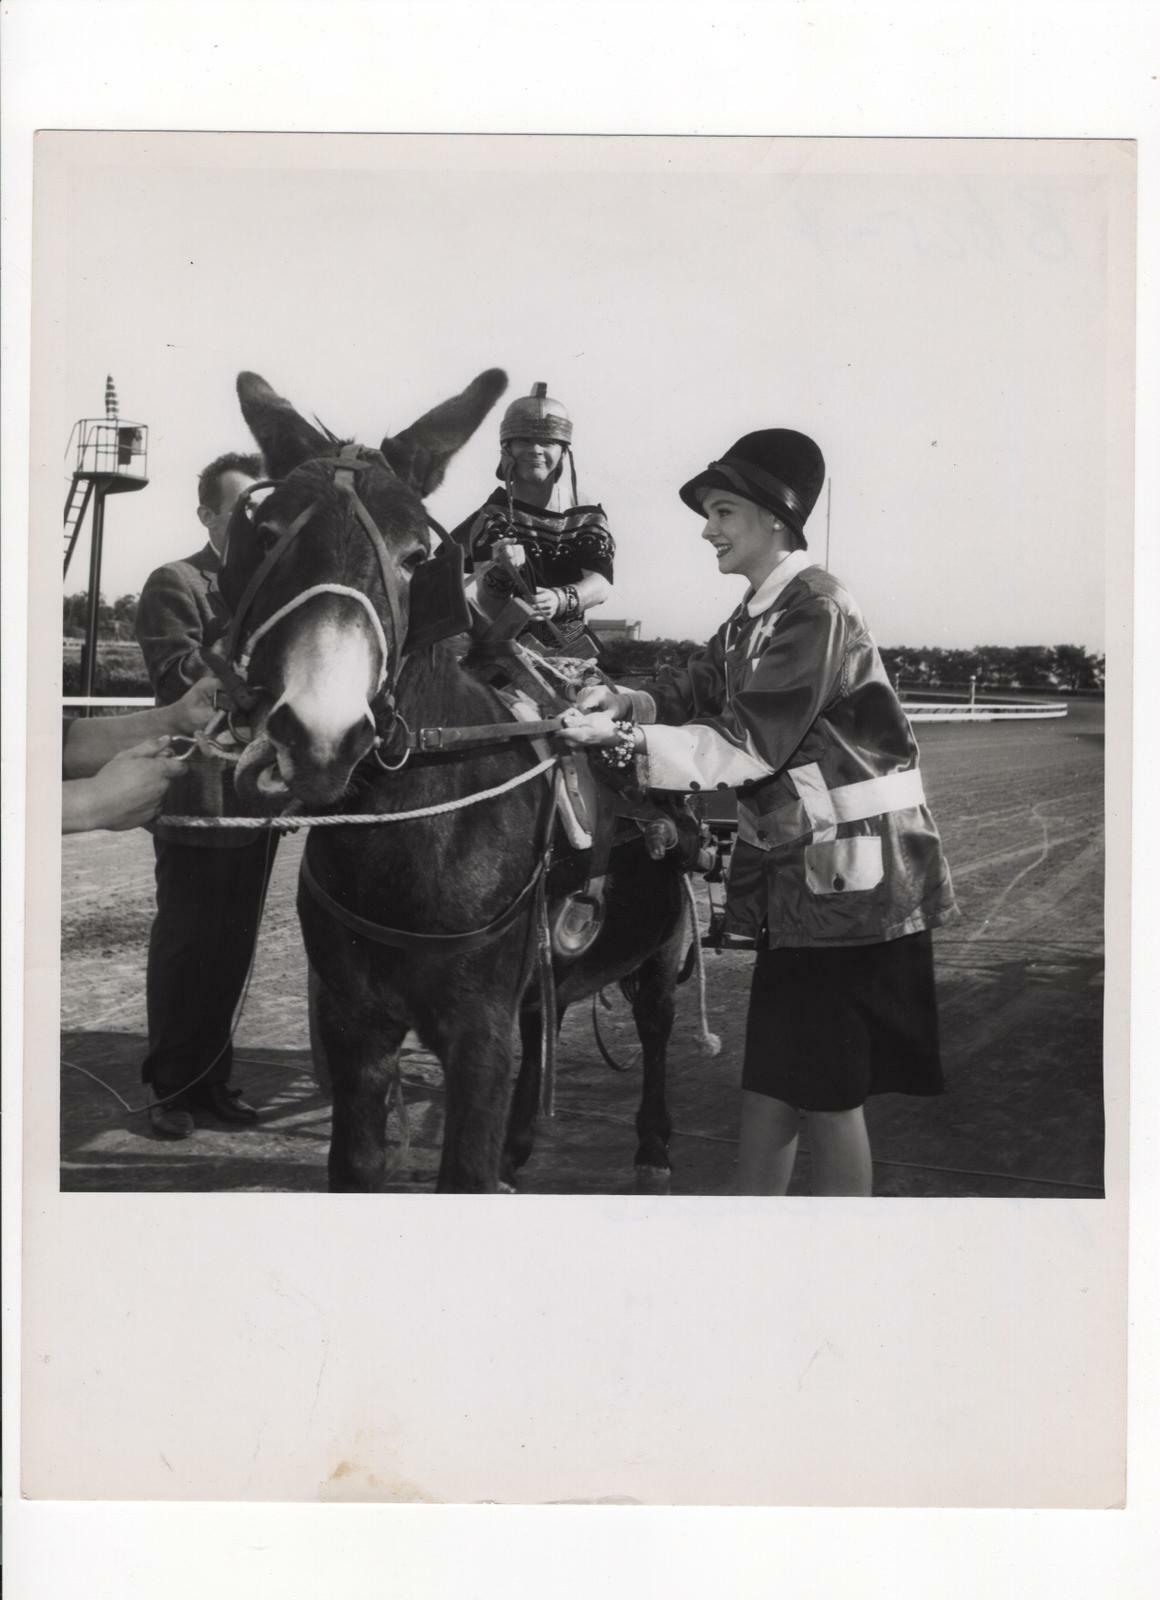 Diane McBain BOMBSHELL HORSE RACE 1950s STUNNING PORTRAIT ORIG PHOTO 342